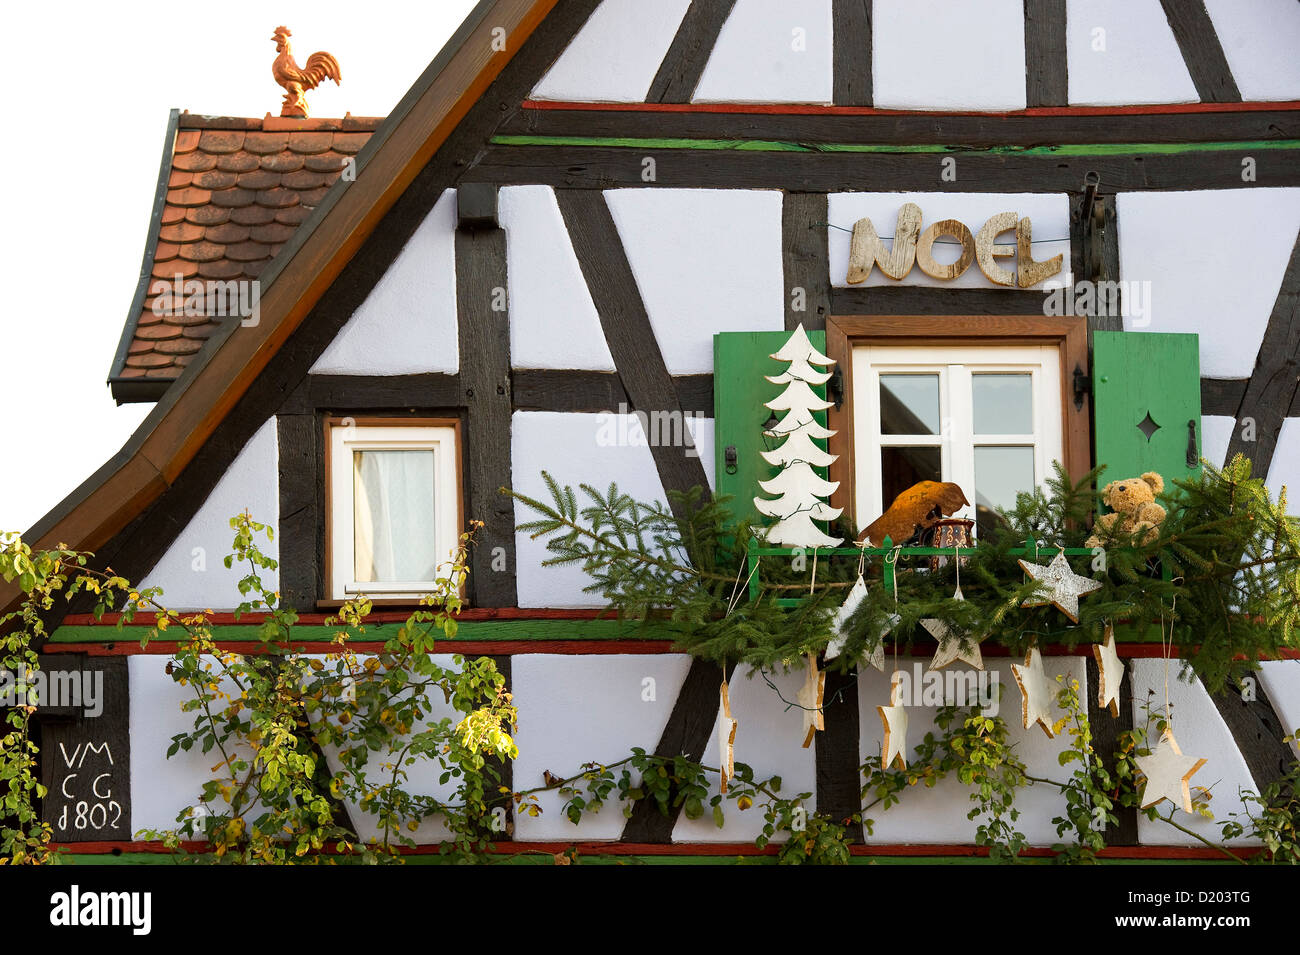 Adornos de Navidad en el exterior de una casa, Kandel, Renania-Palatinado, Alemania Foto de stock